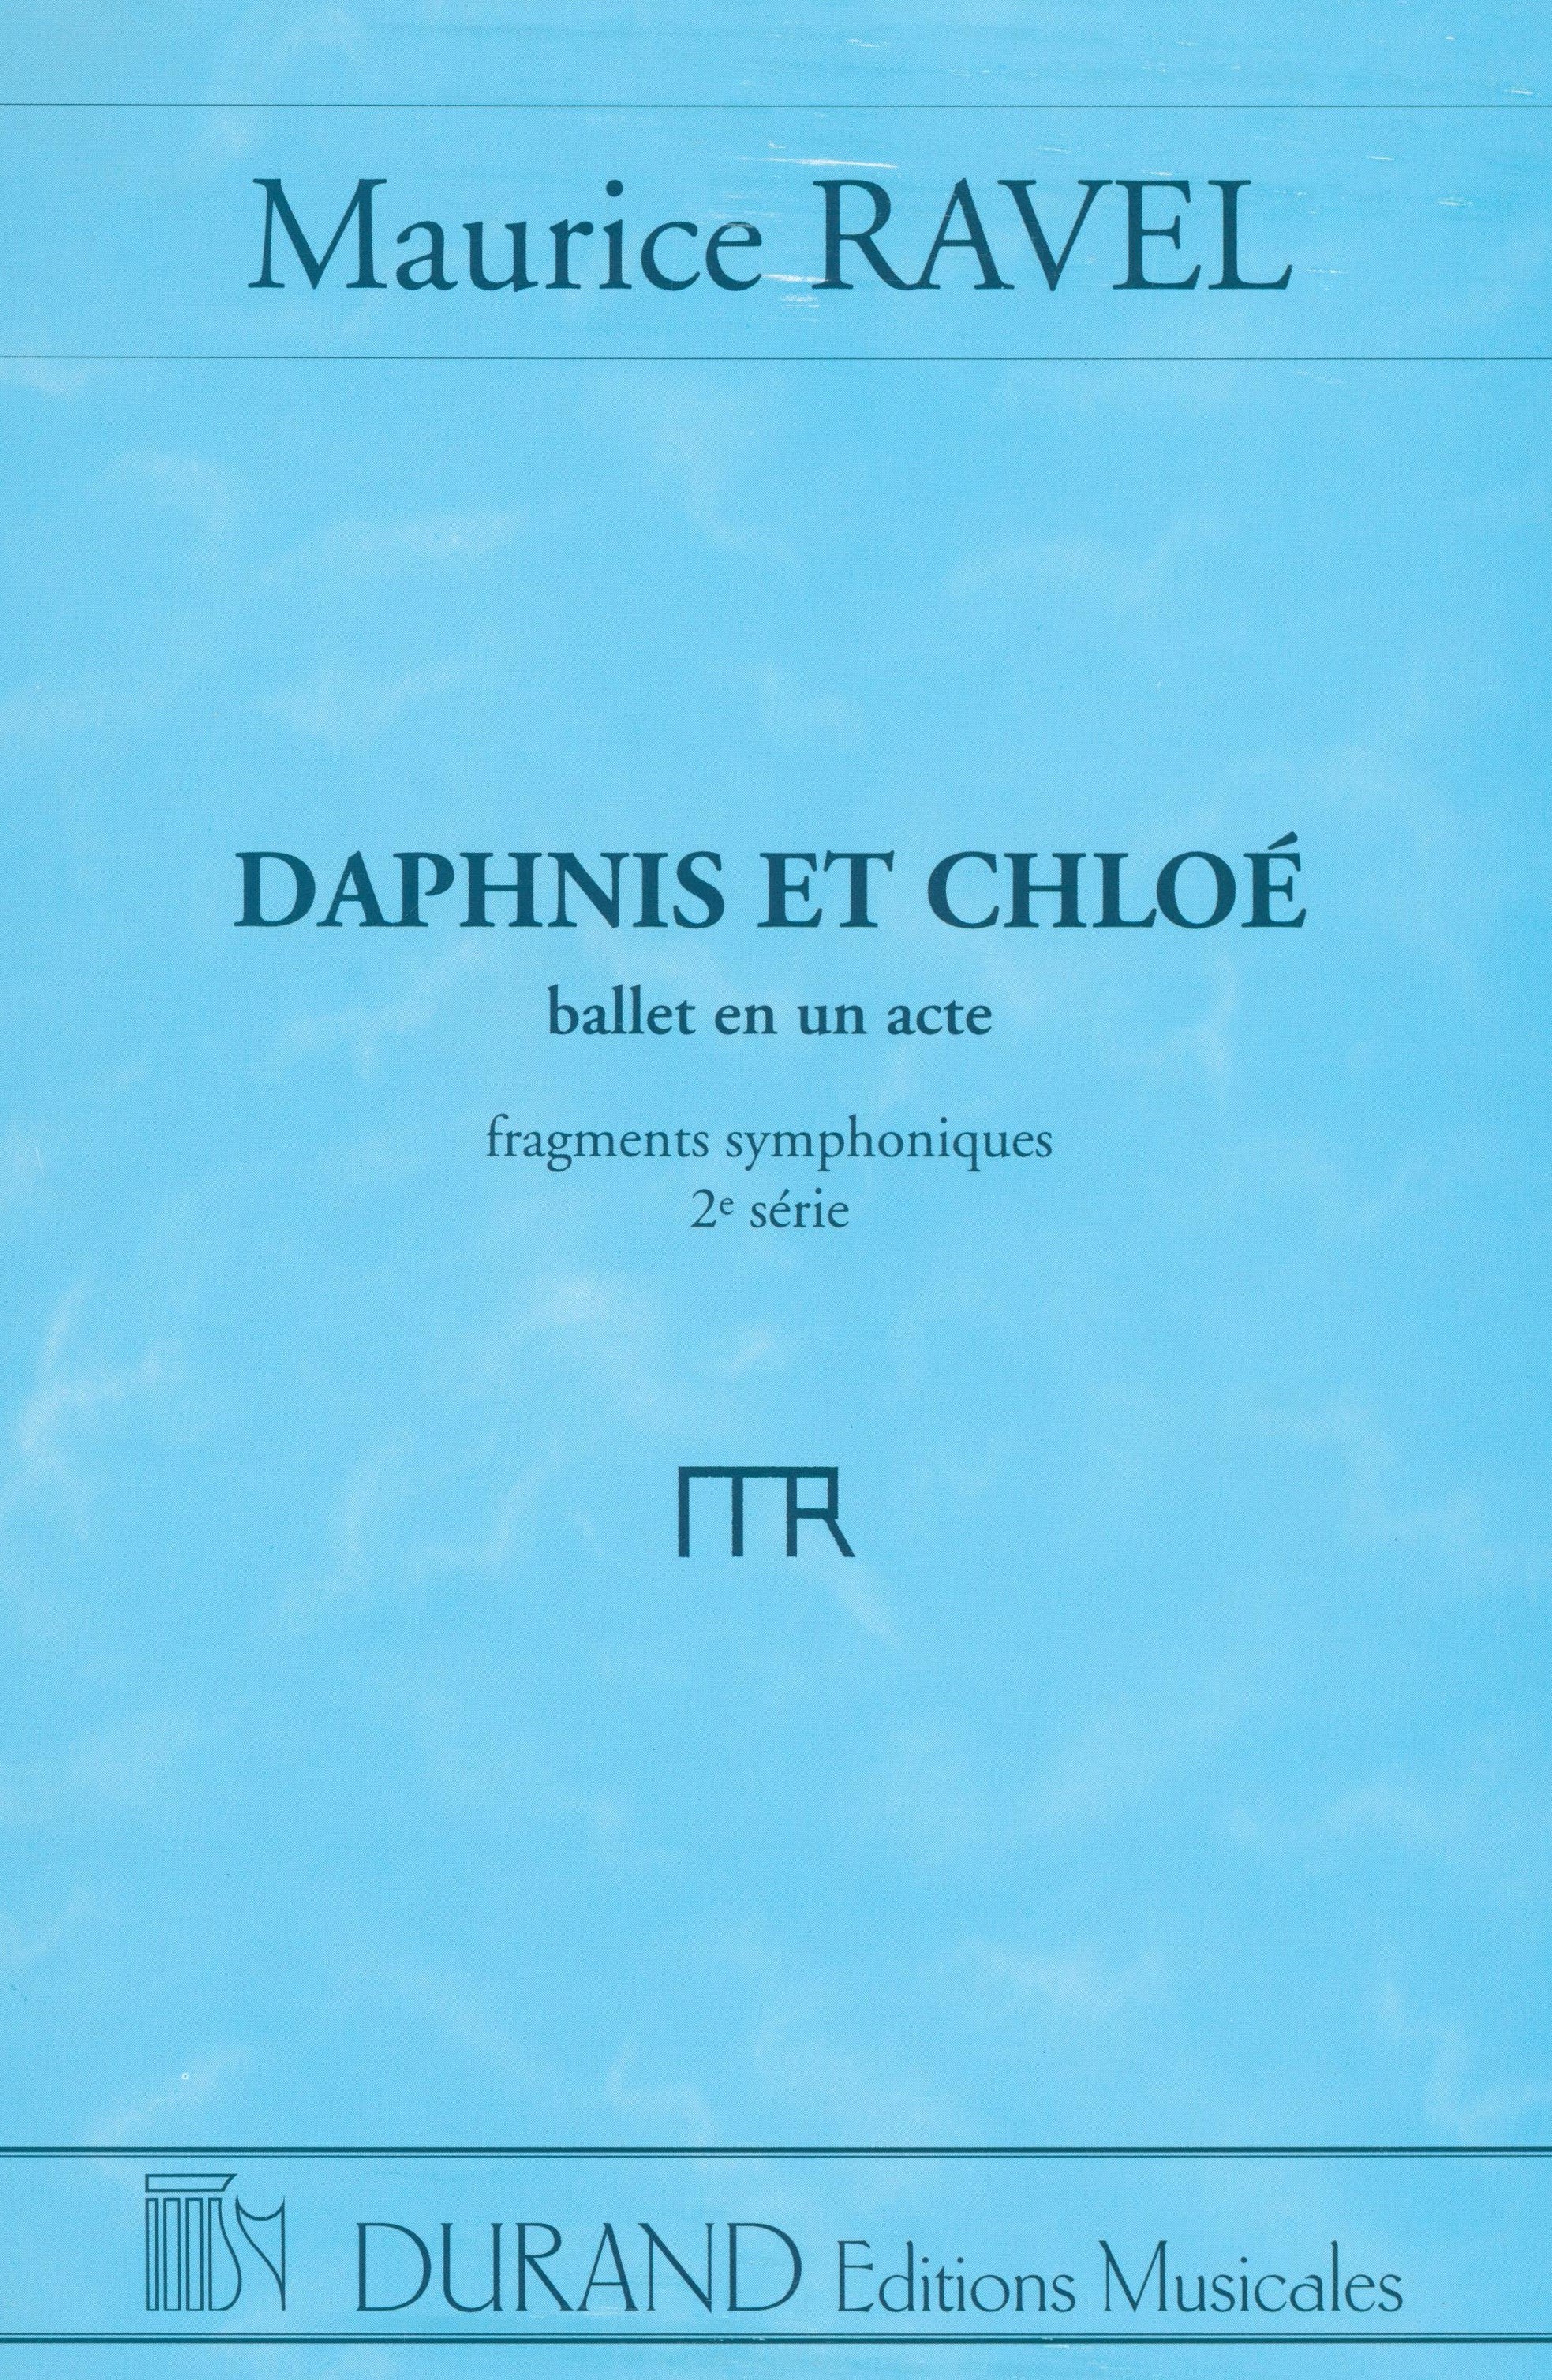 Ravel: Daphnis et Chloé - 2nd Suite